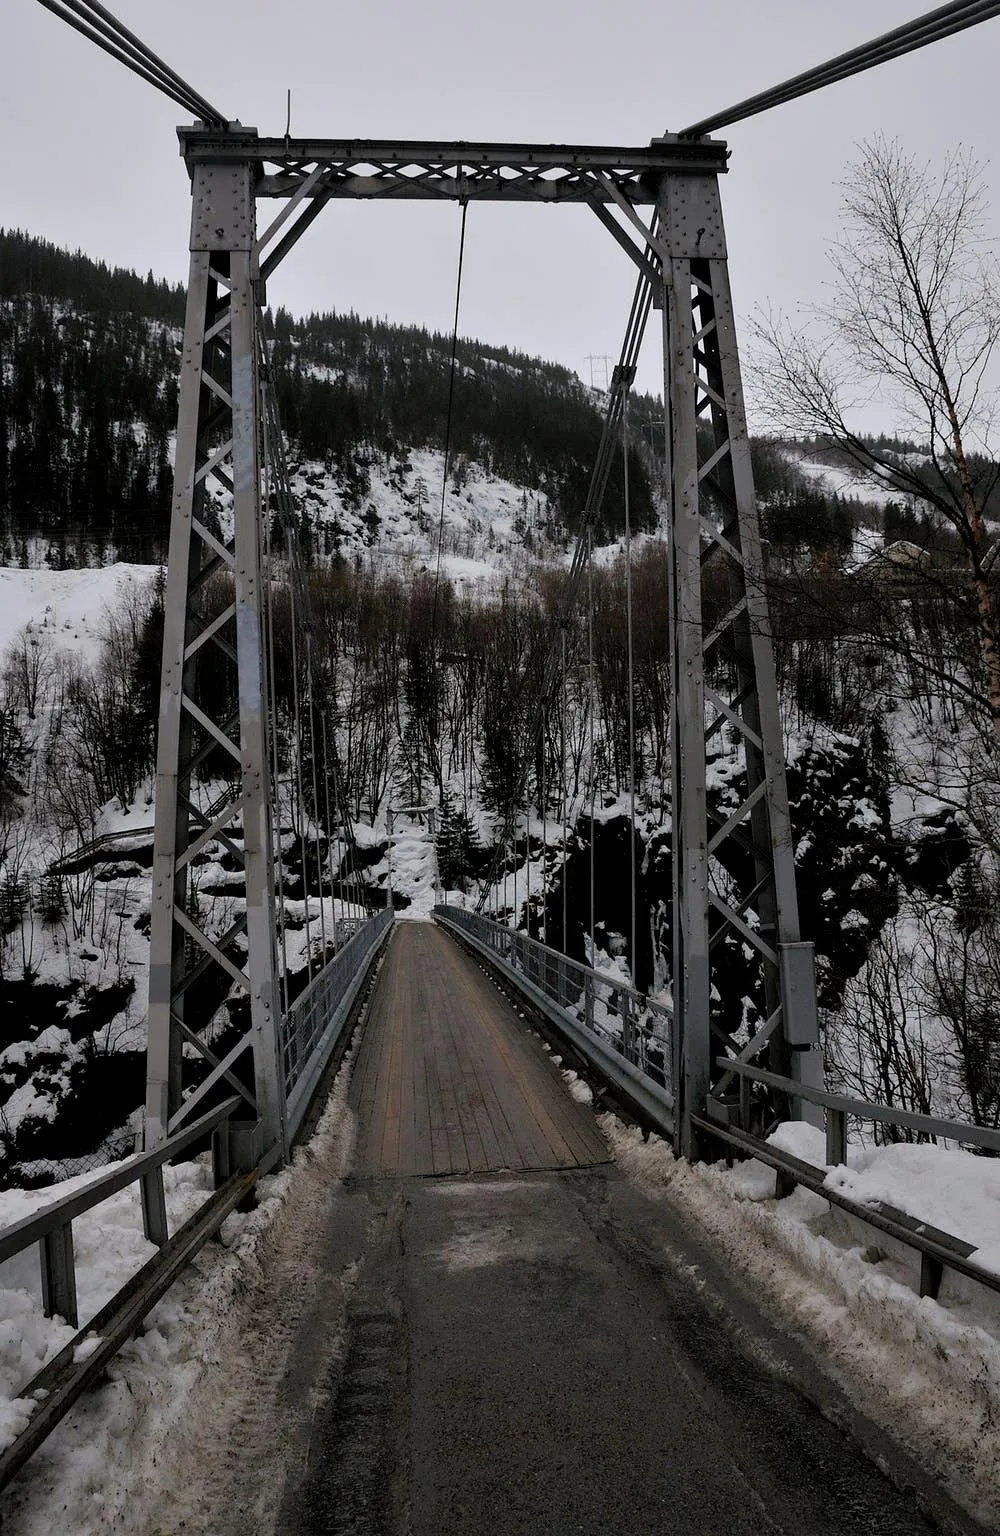 Bridge in to the Vemork site